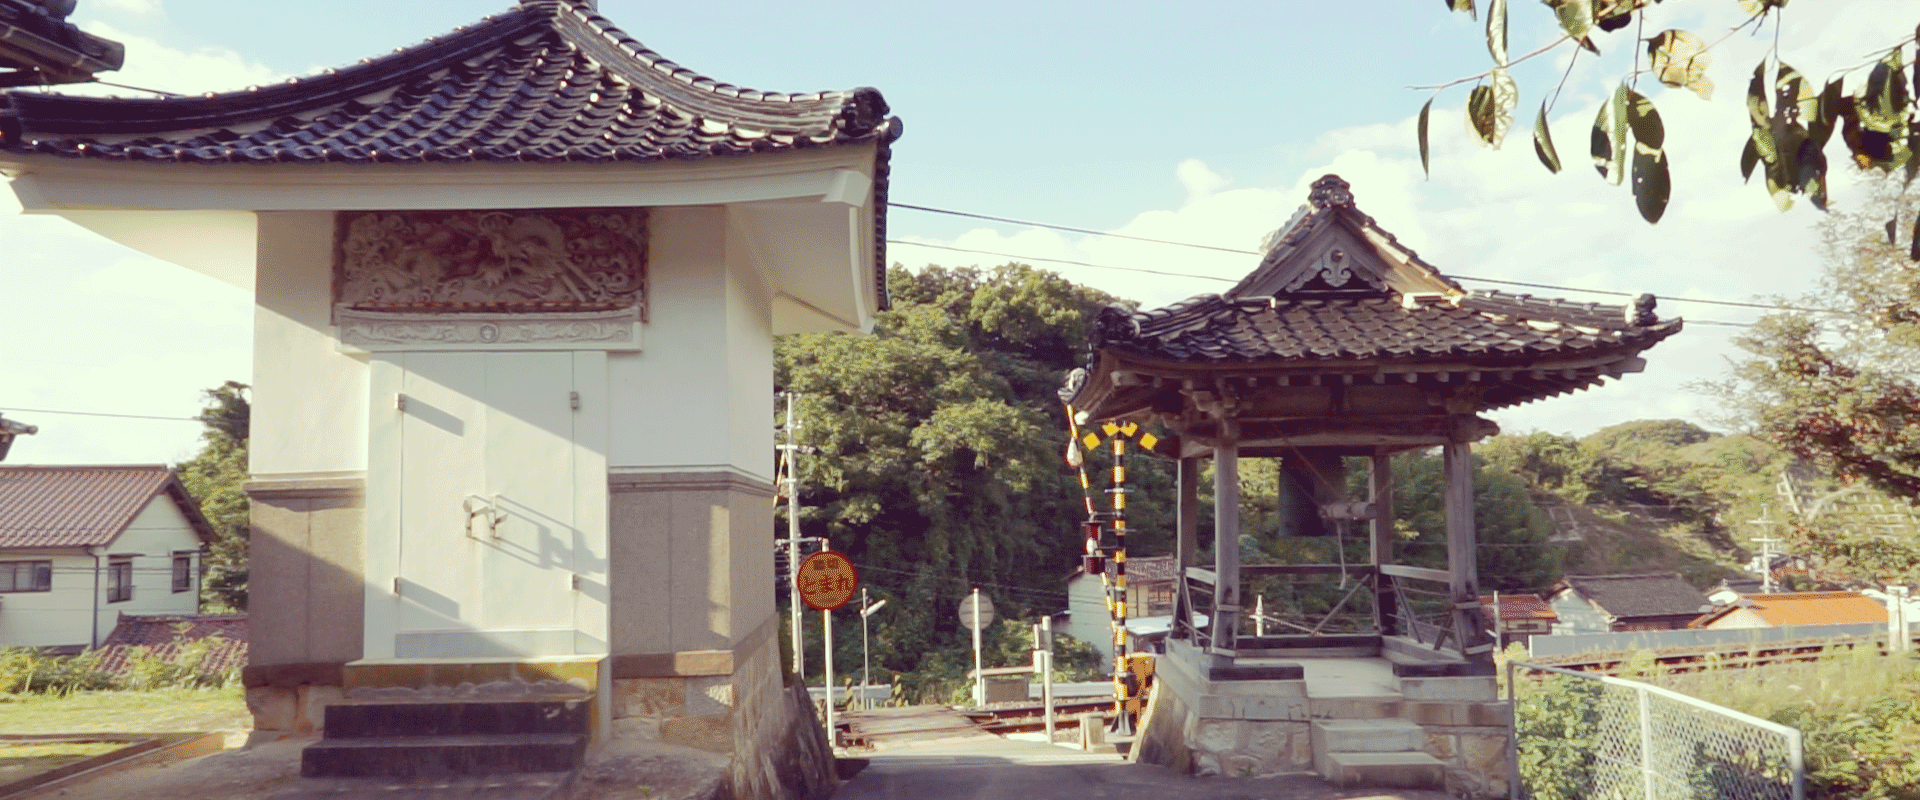 Keigan Temple, Yunotsu-cho, Ohda, Shimane, Japan.